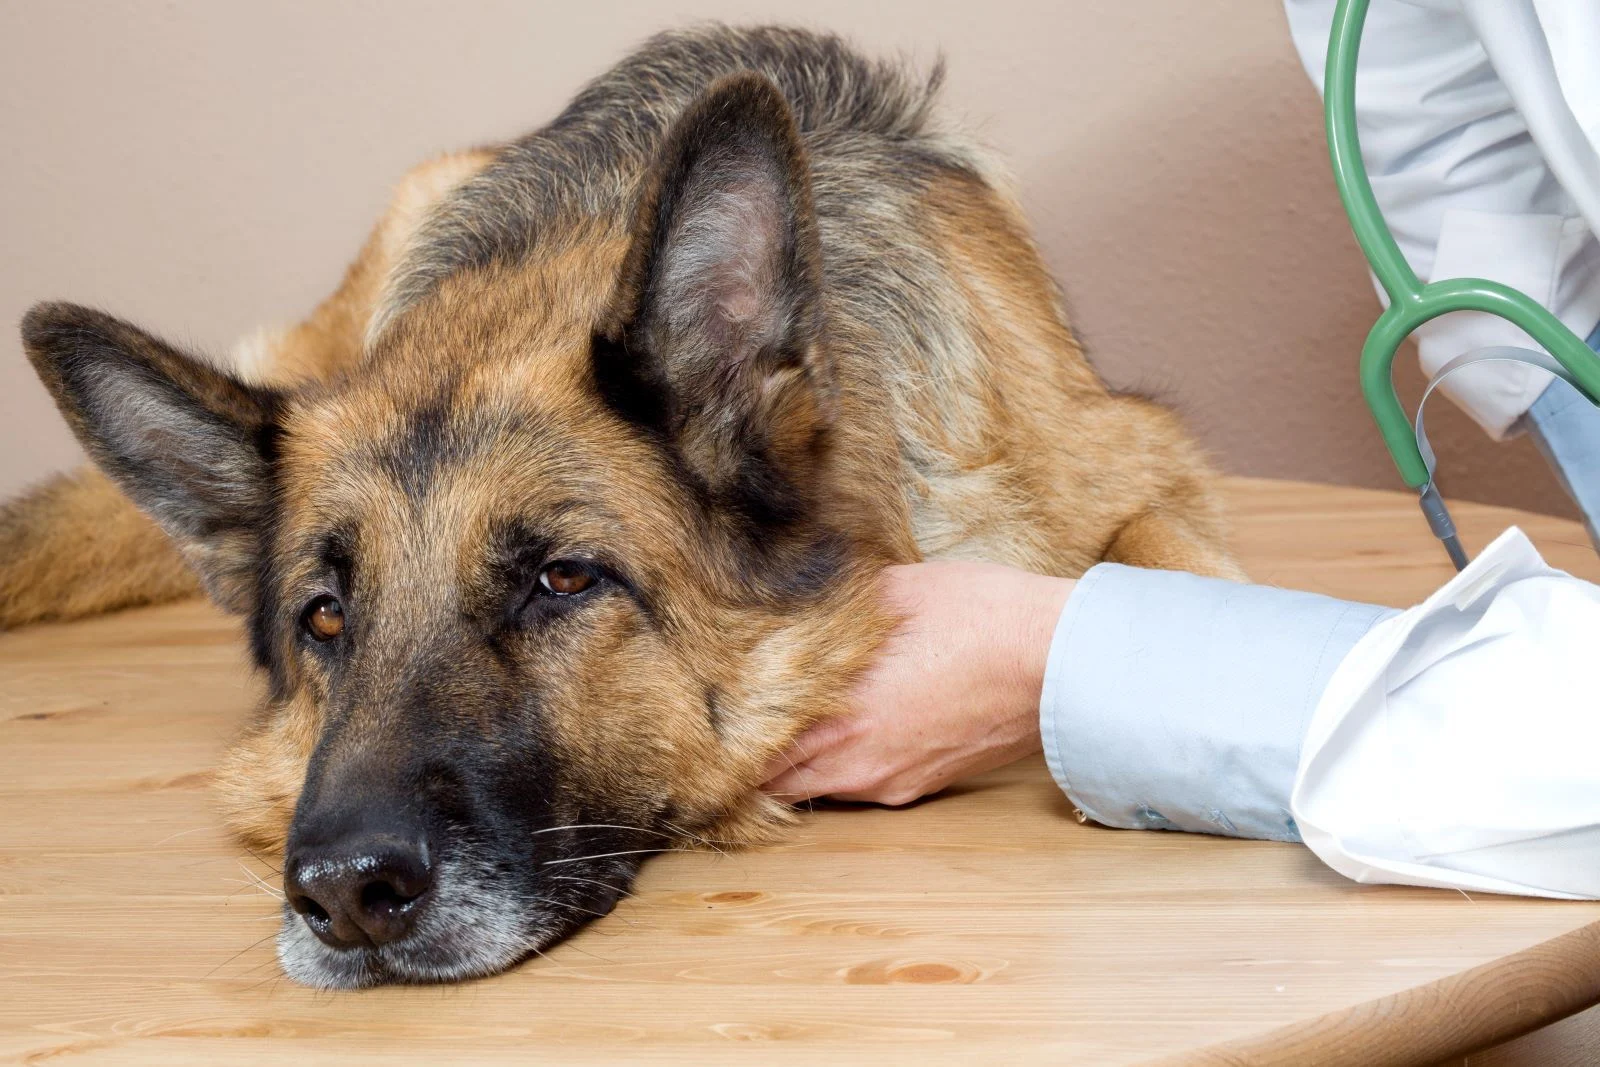 Maladie vestibulaire chez le chien : Causes, traitement et prévention